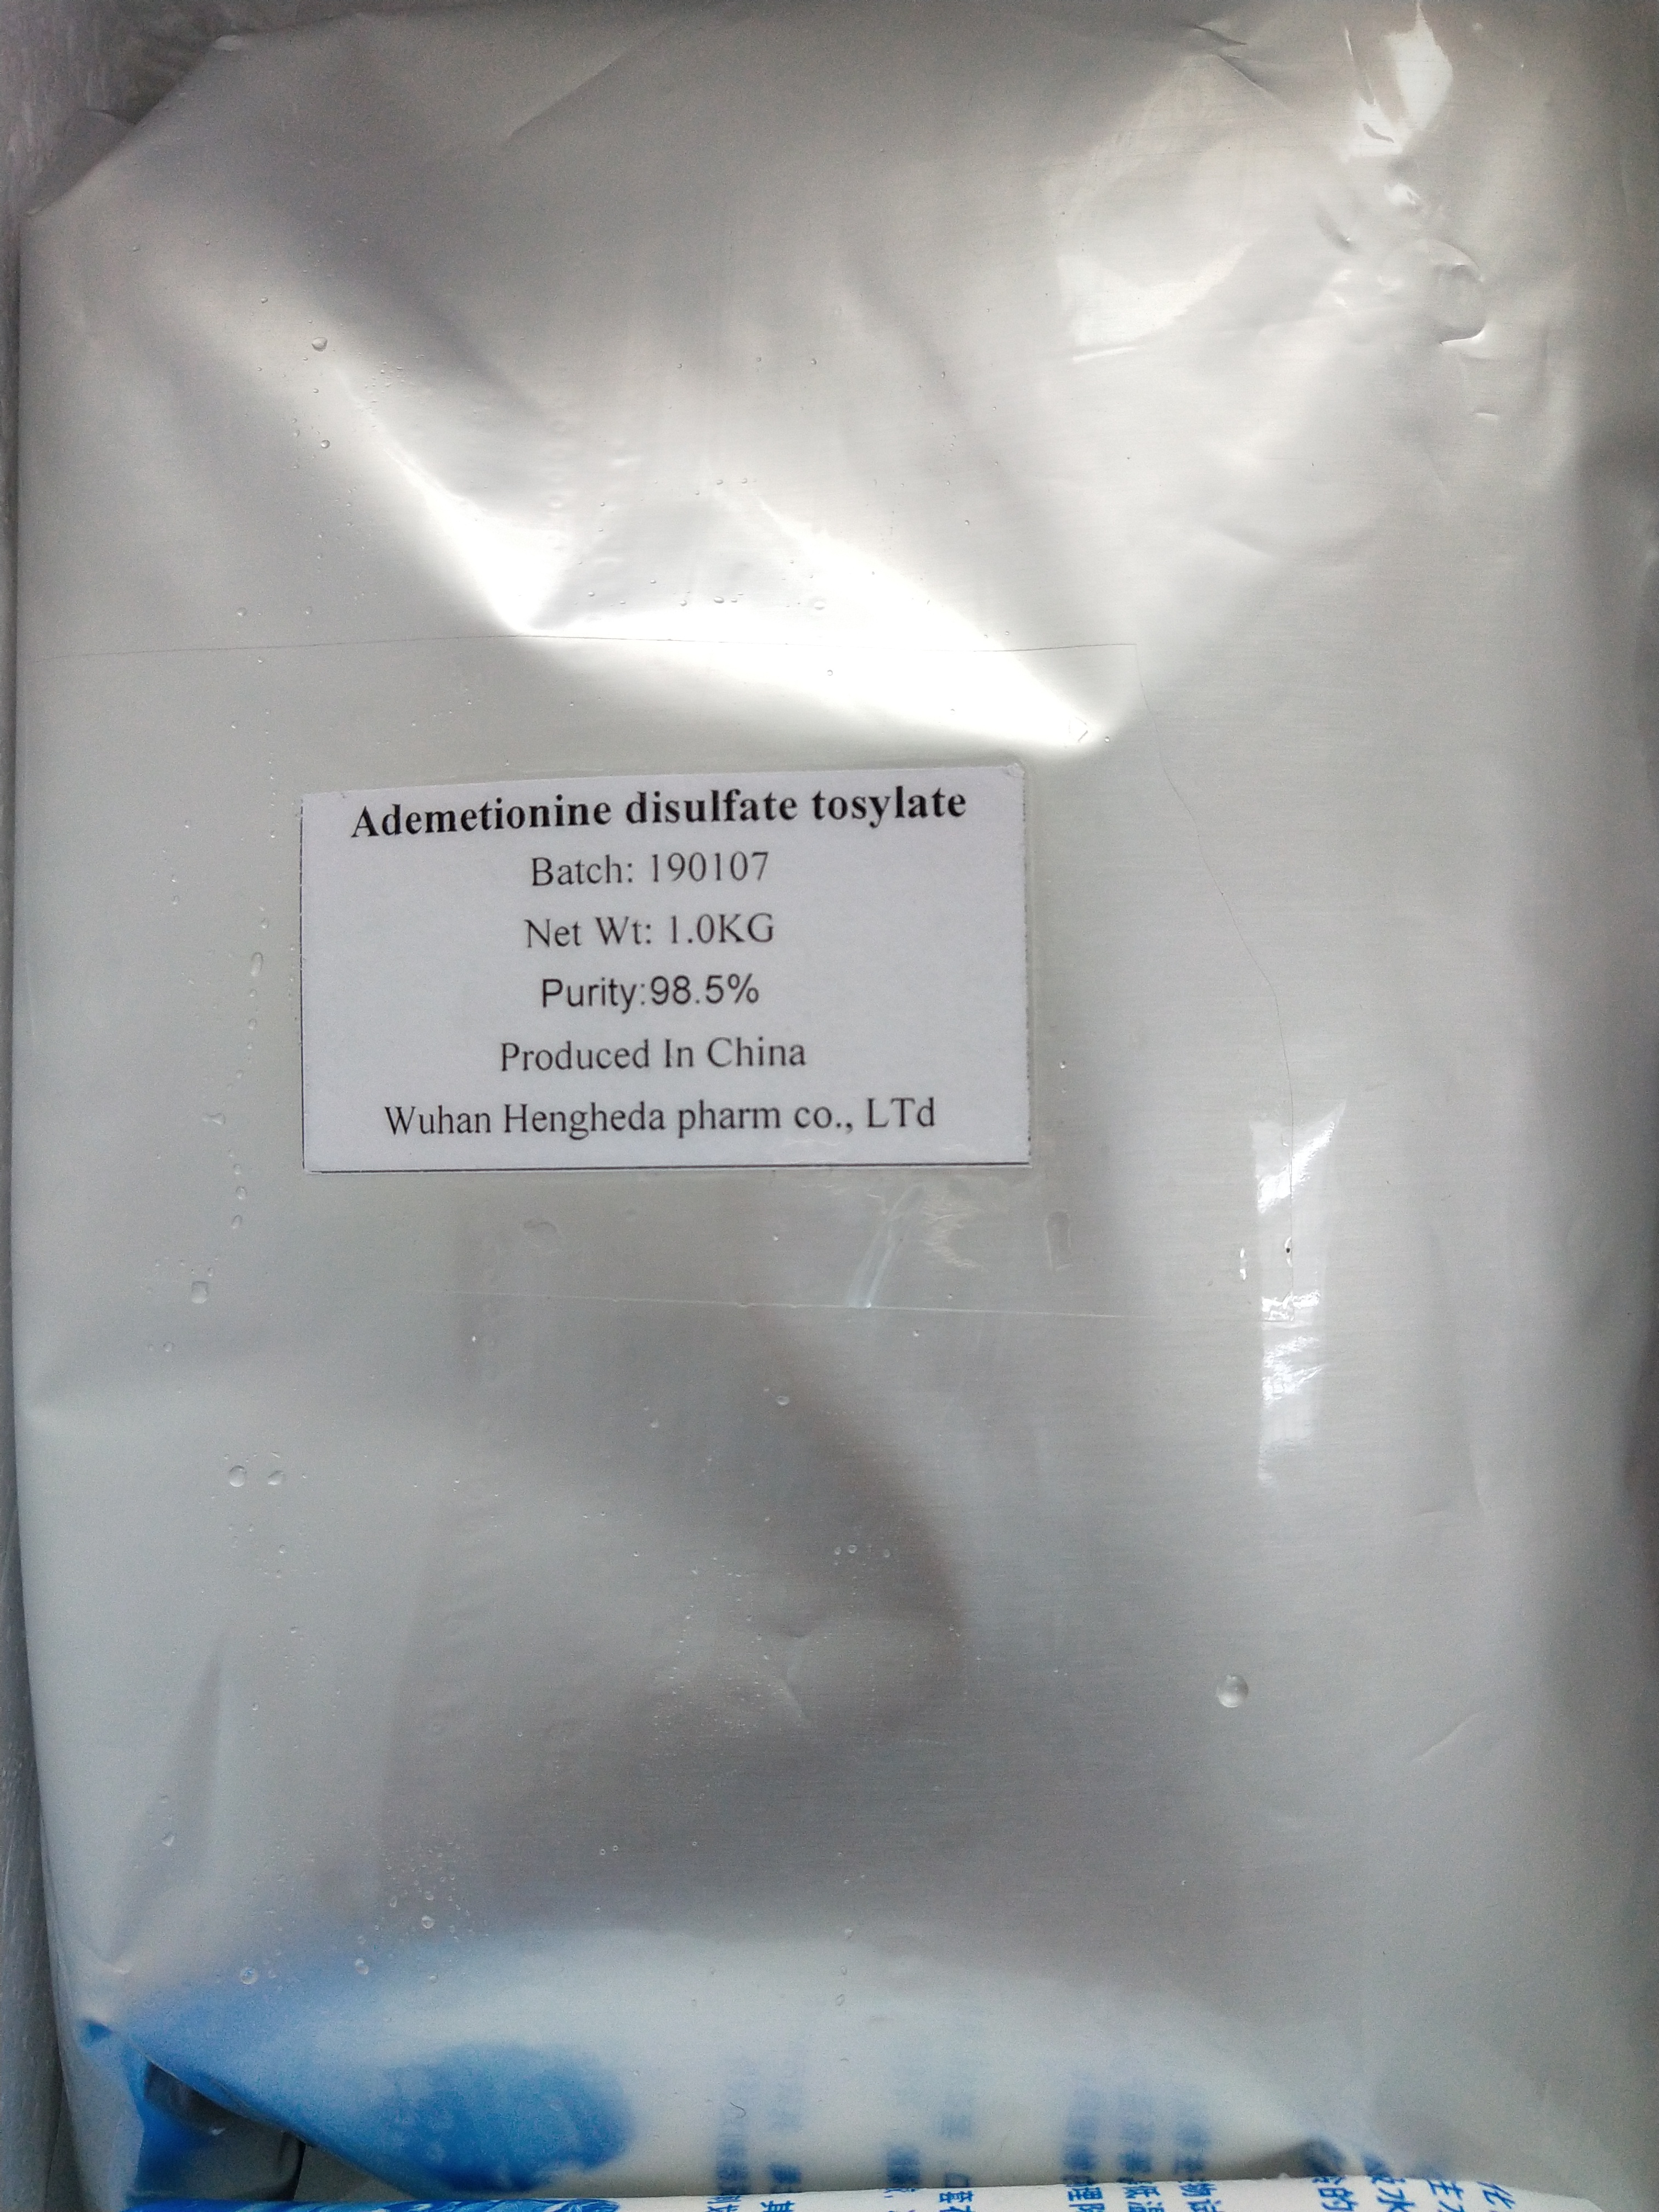 Китай Высококачественный тозилат дисульфата адеметионина CAS 97540-22-2, производитель